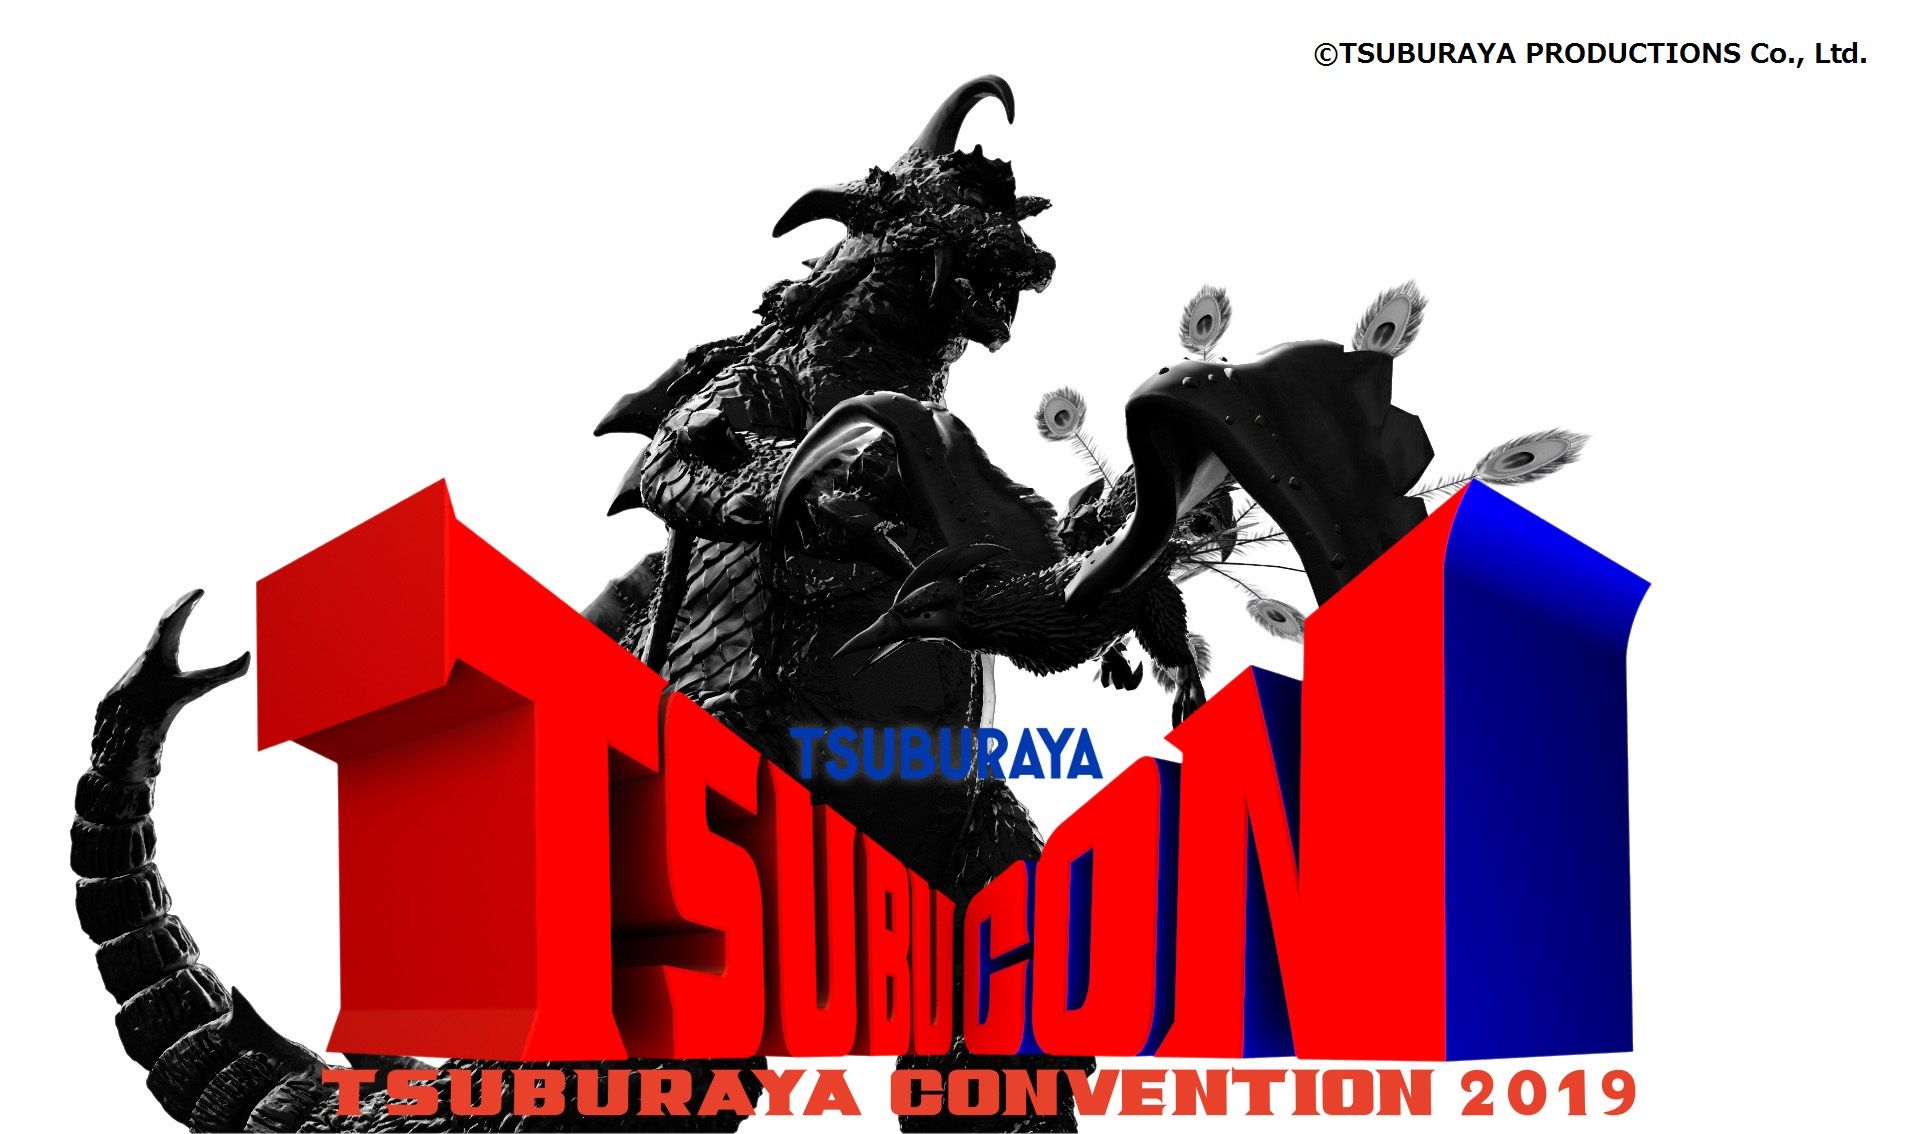 TSUBURAYA CONVENTION 2019 “Ultraman Zero 10 Years Anniversary New Generation Heroes to Gather!”